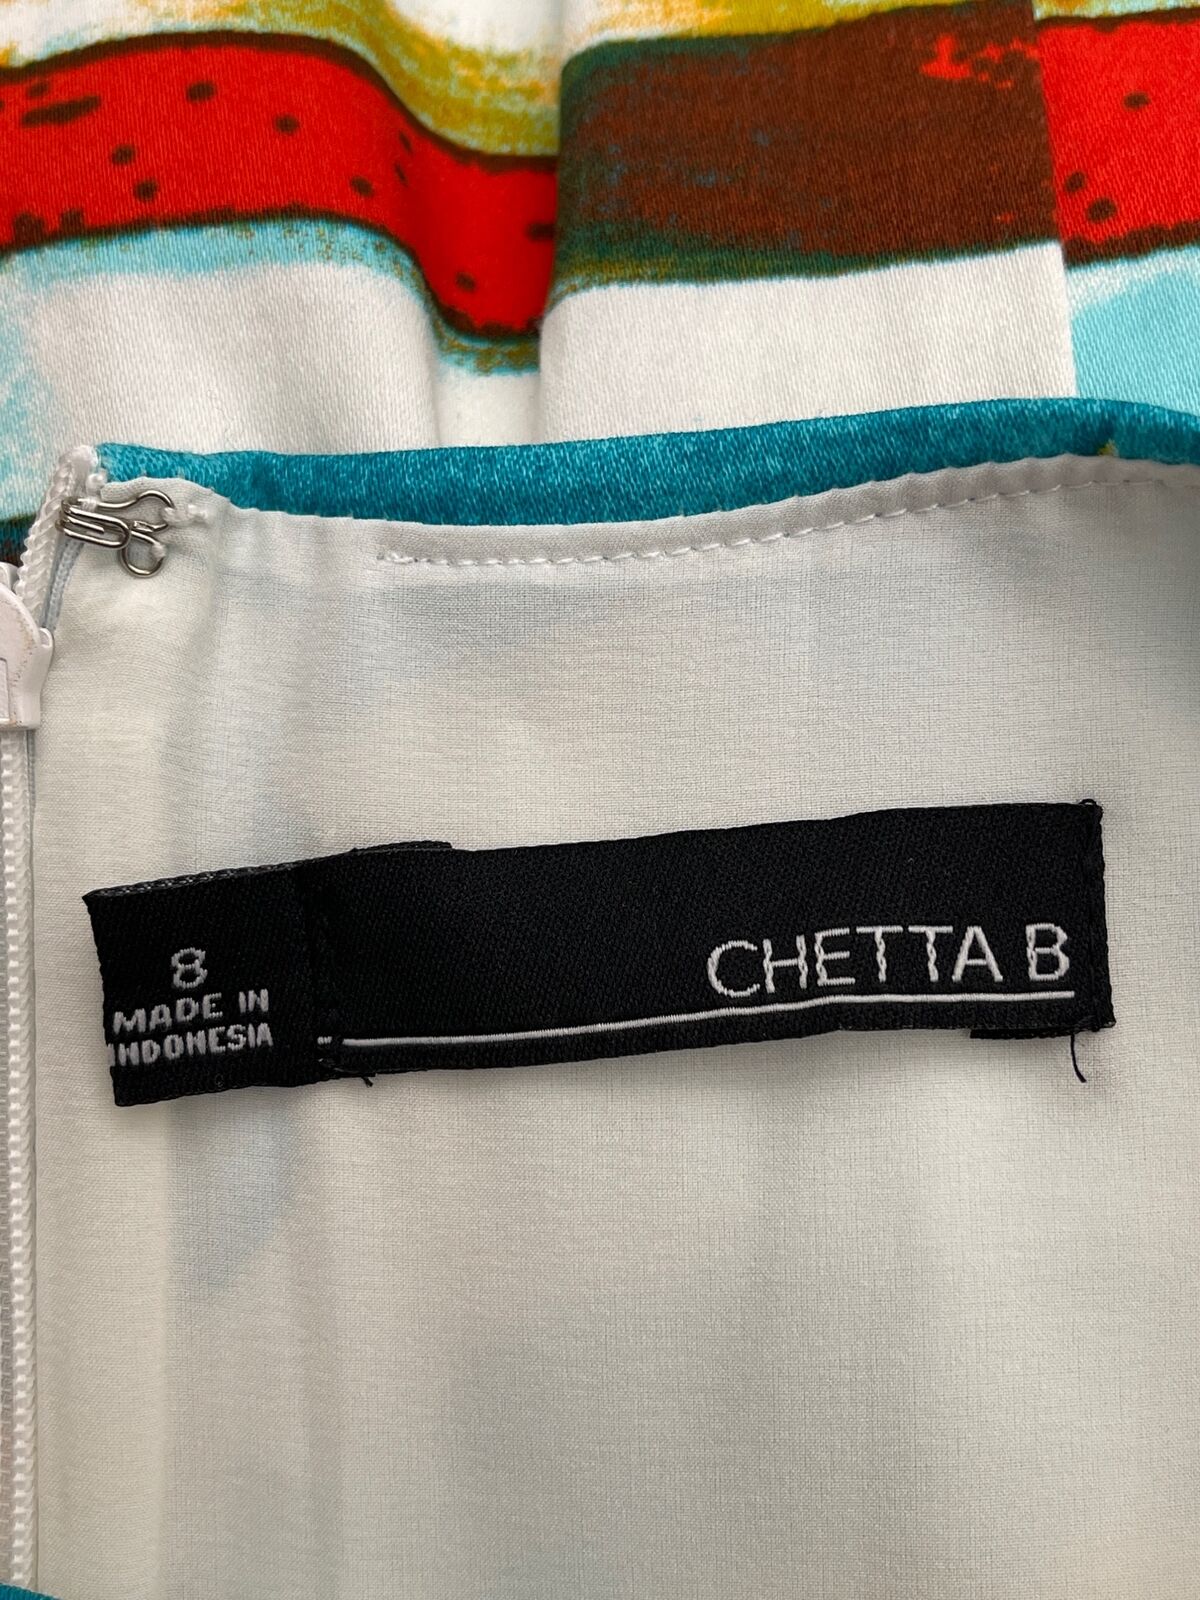 Chetta B Multicolored Shift Dress Size 8 - image 5